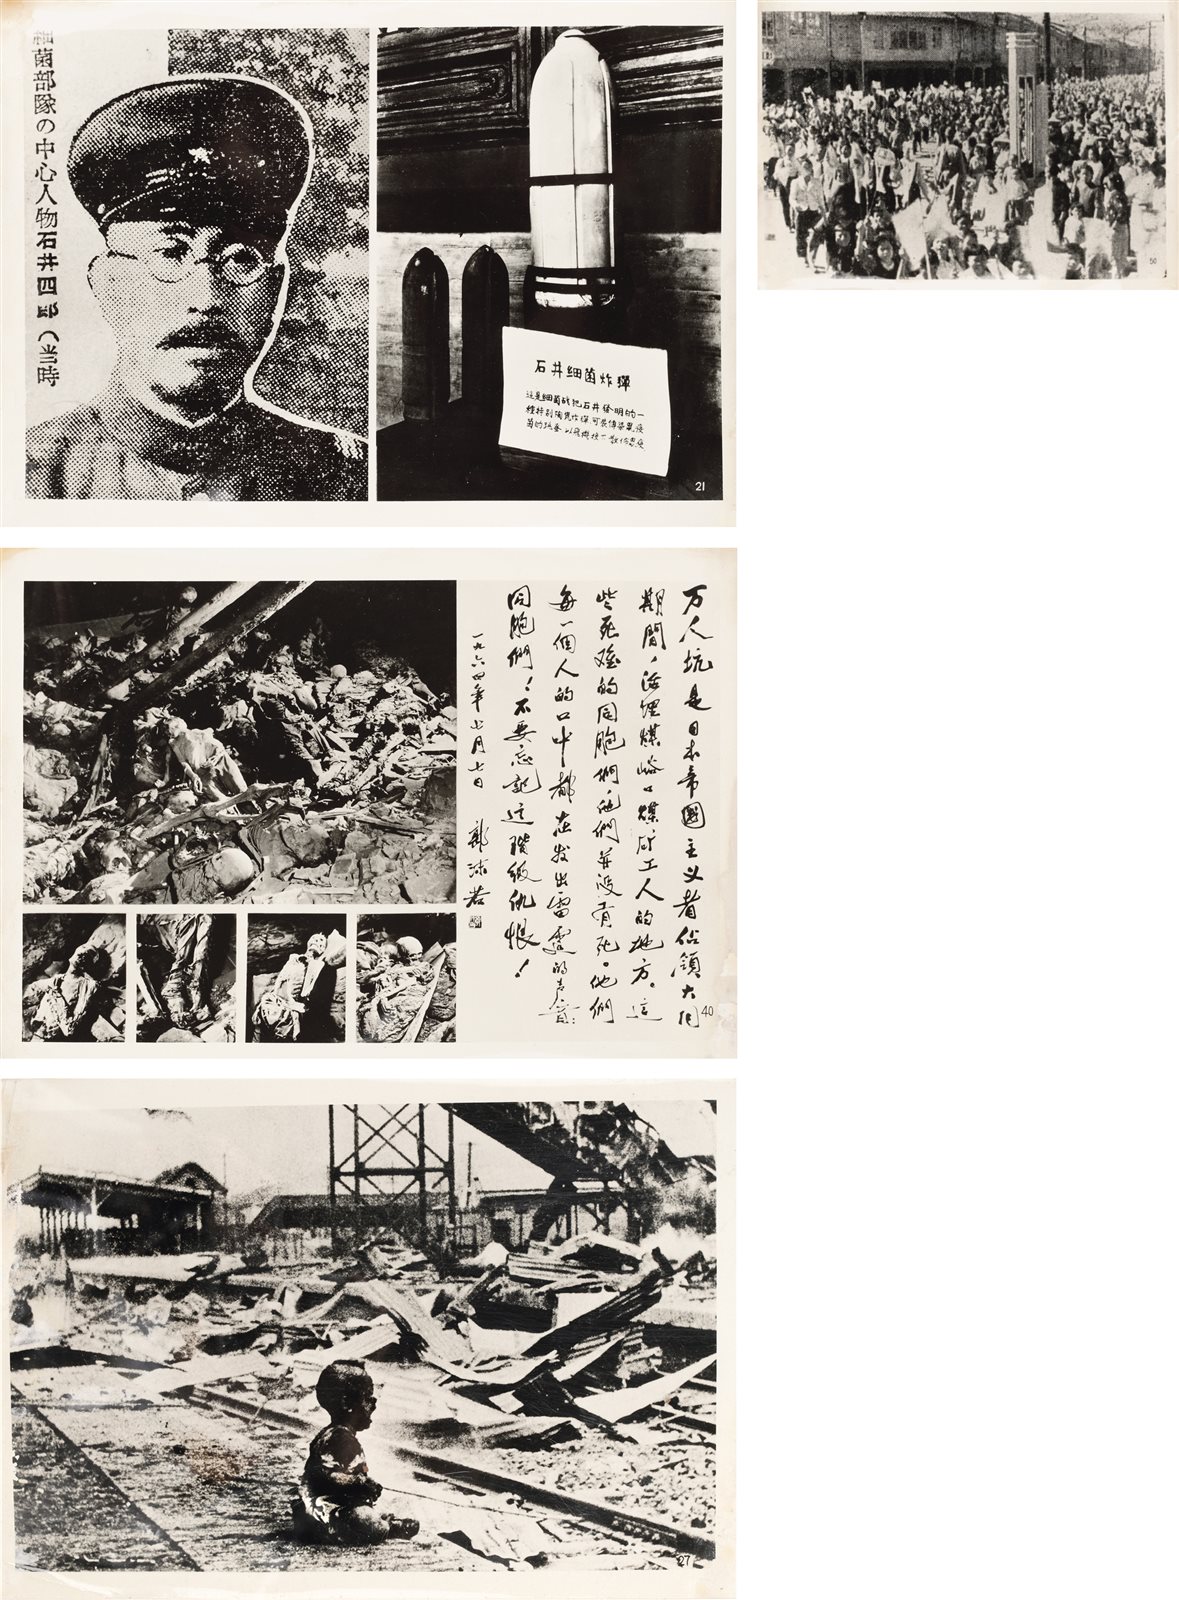 日本侵华史实及中国全面抗战照片一组